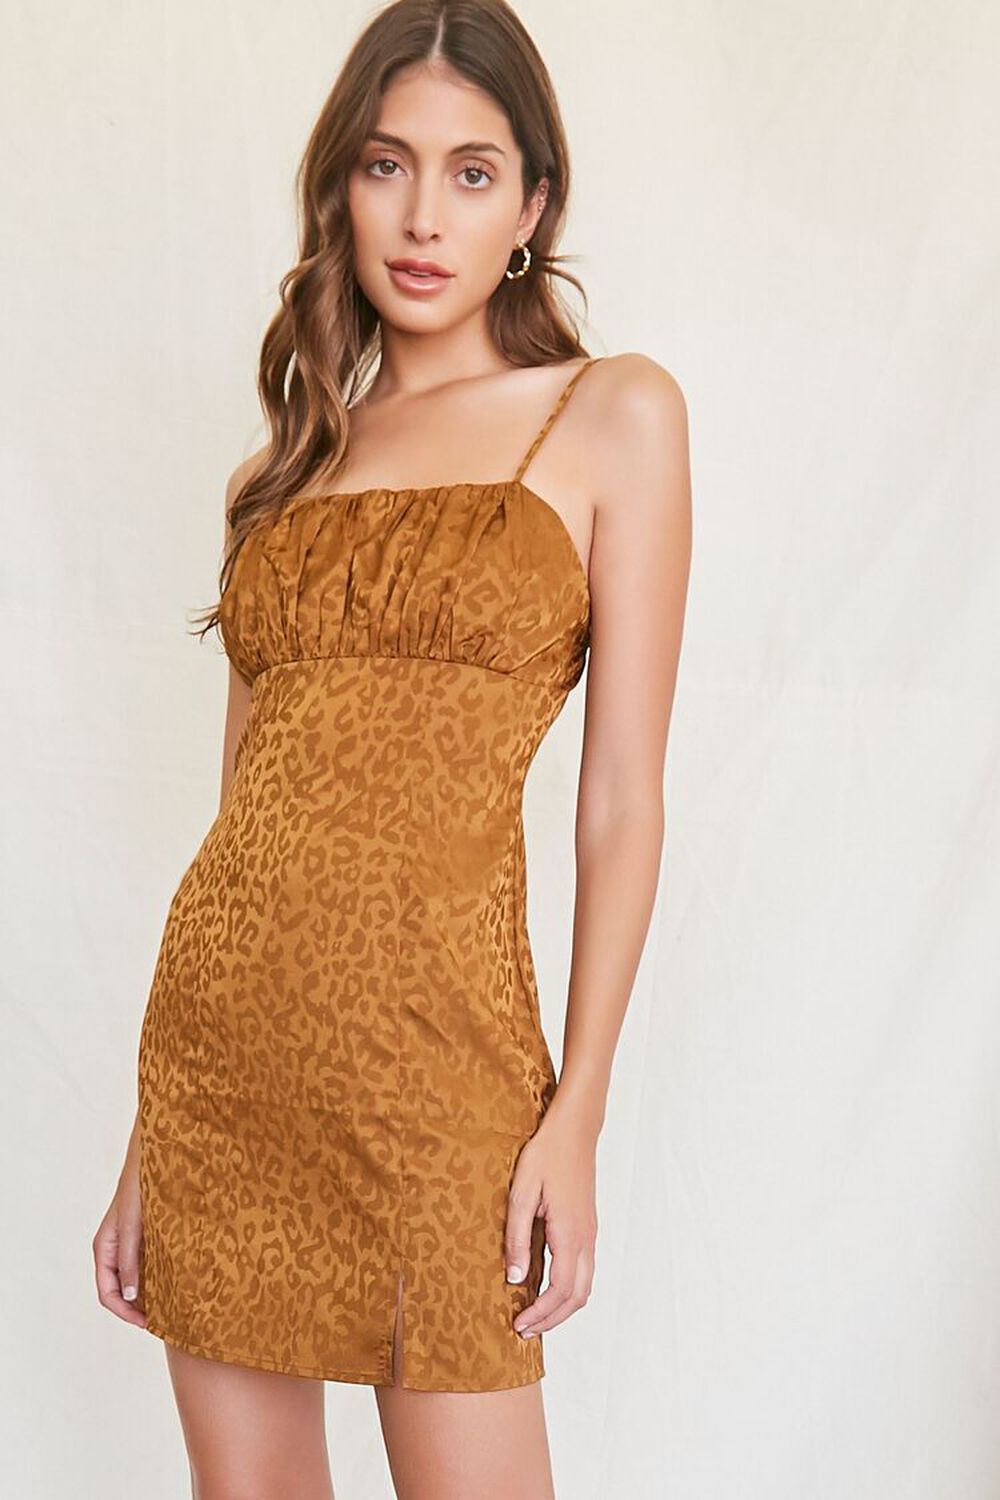 BROWN Leopard Print Mini Dress, image 1